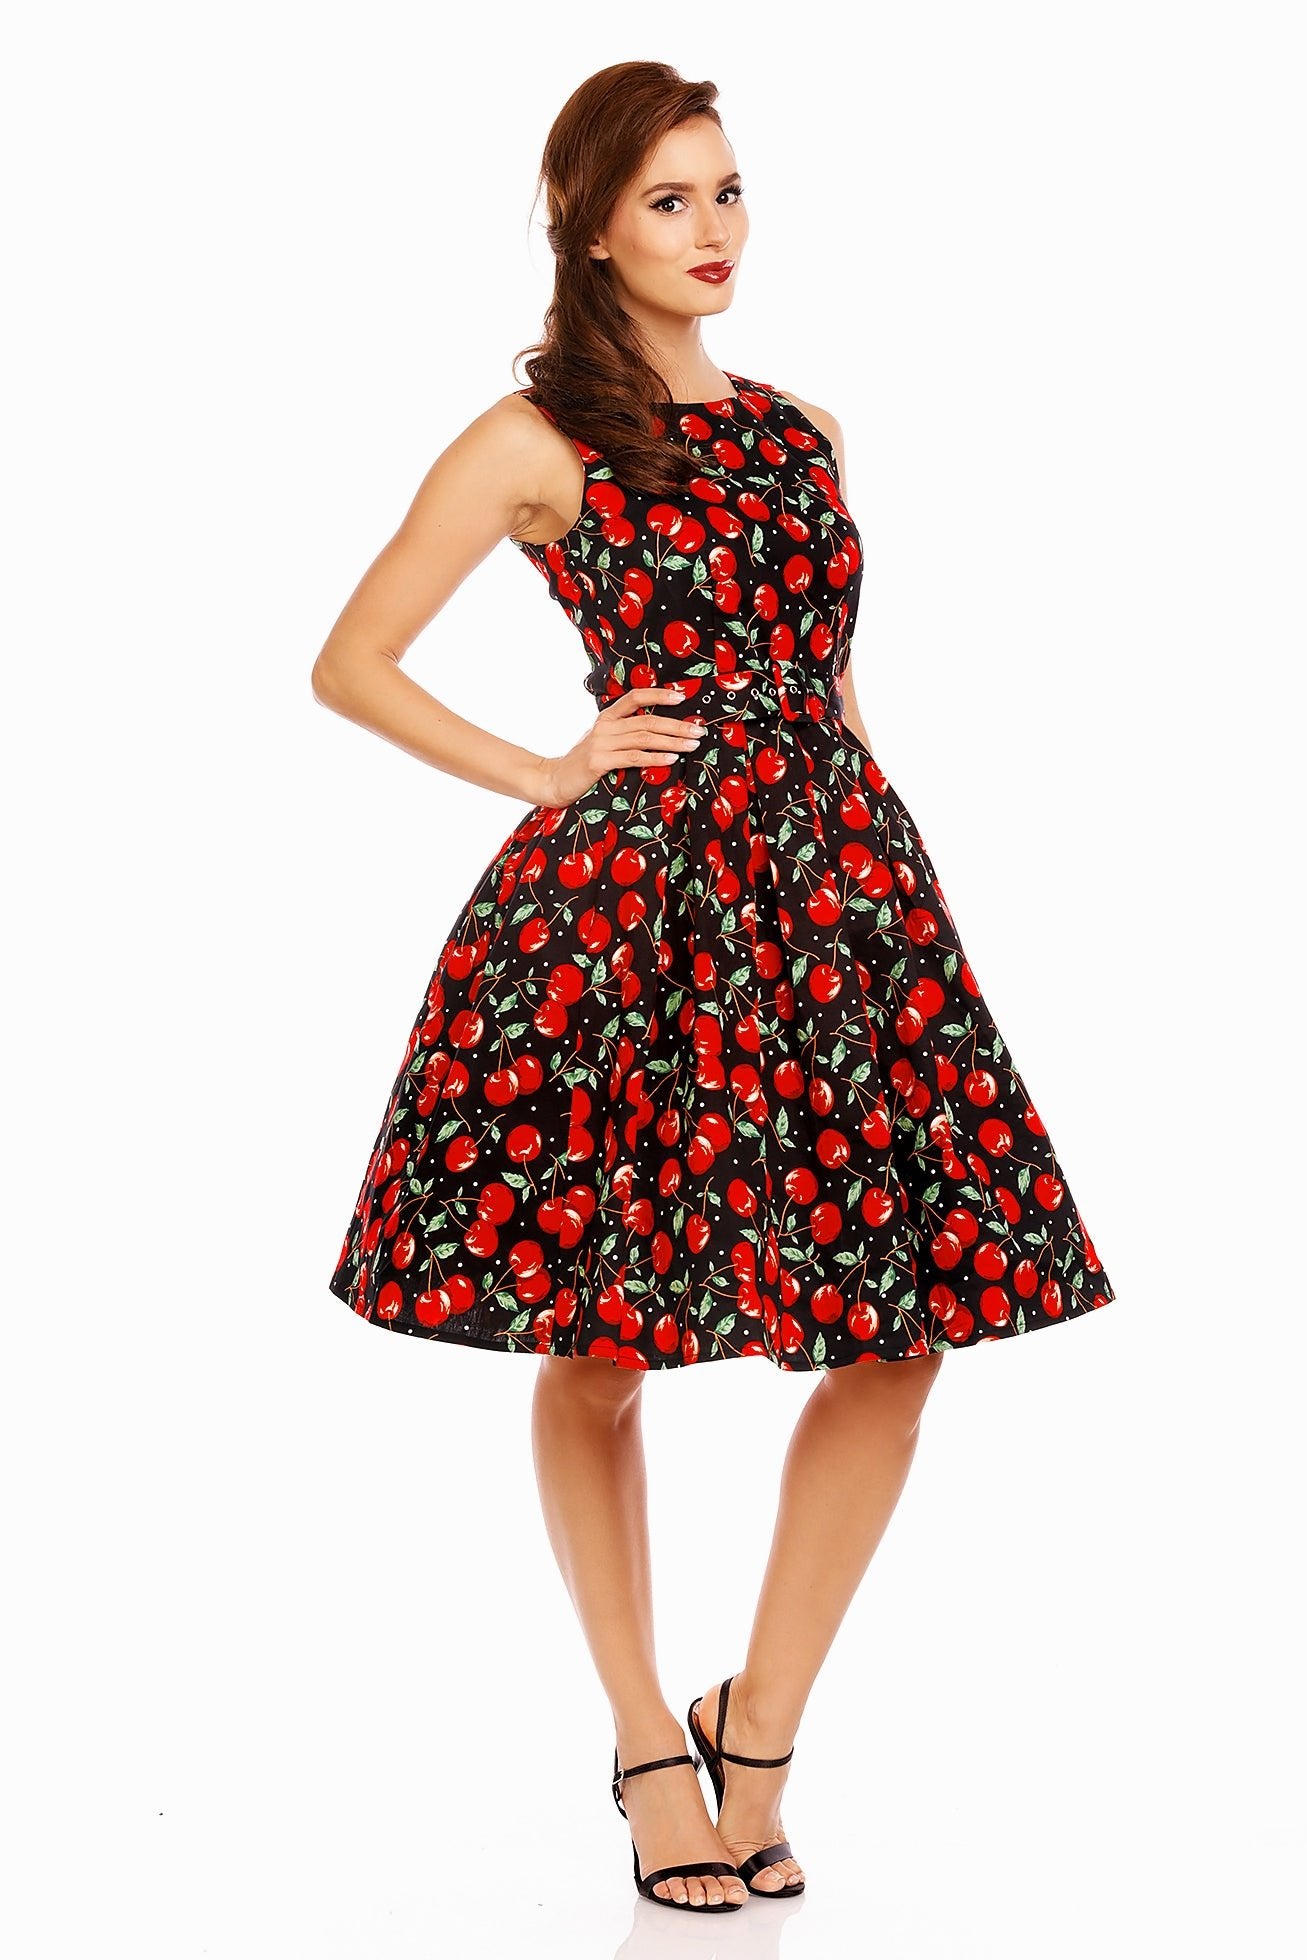 Women's Retro Cherry Swing Dress